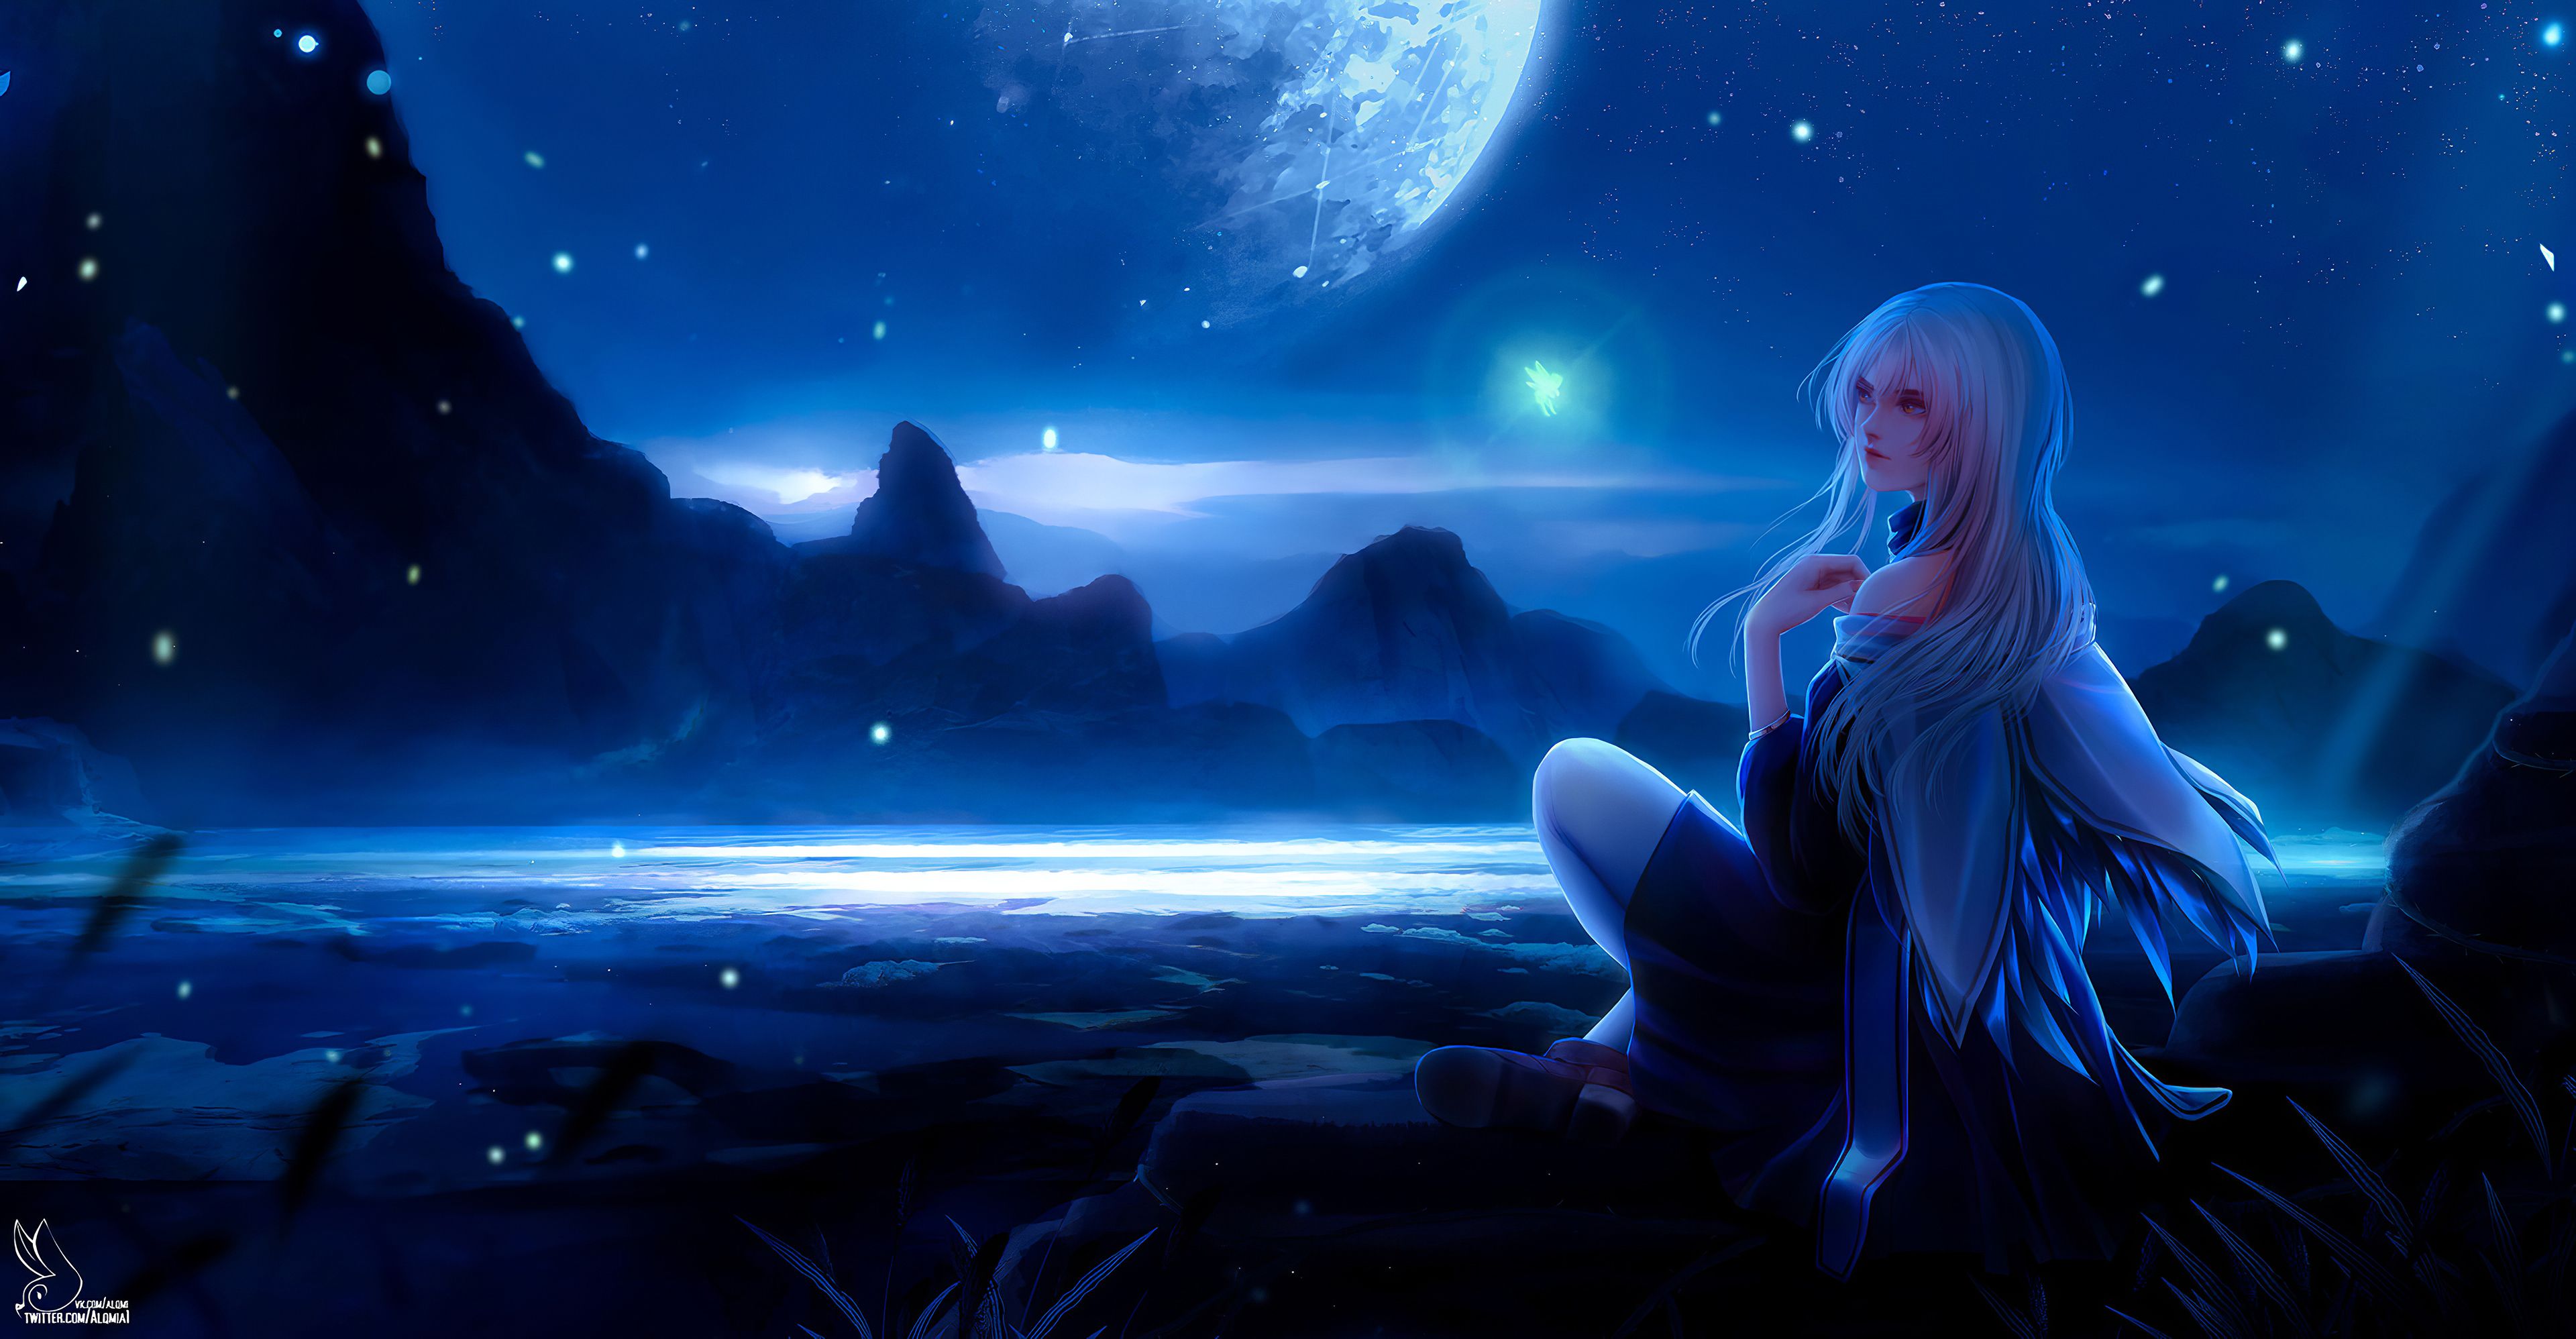 Anime Moonlight Wallpaper Free Anime Moonlight Background